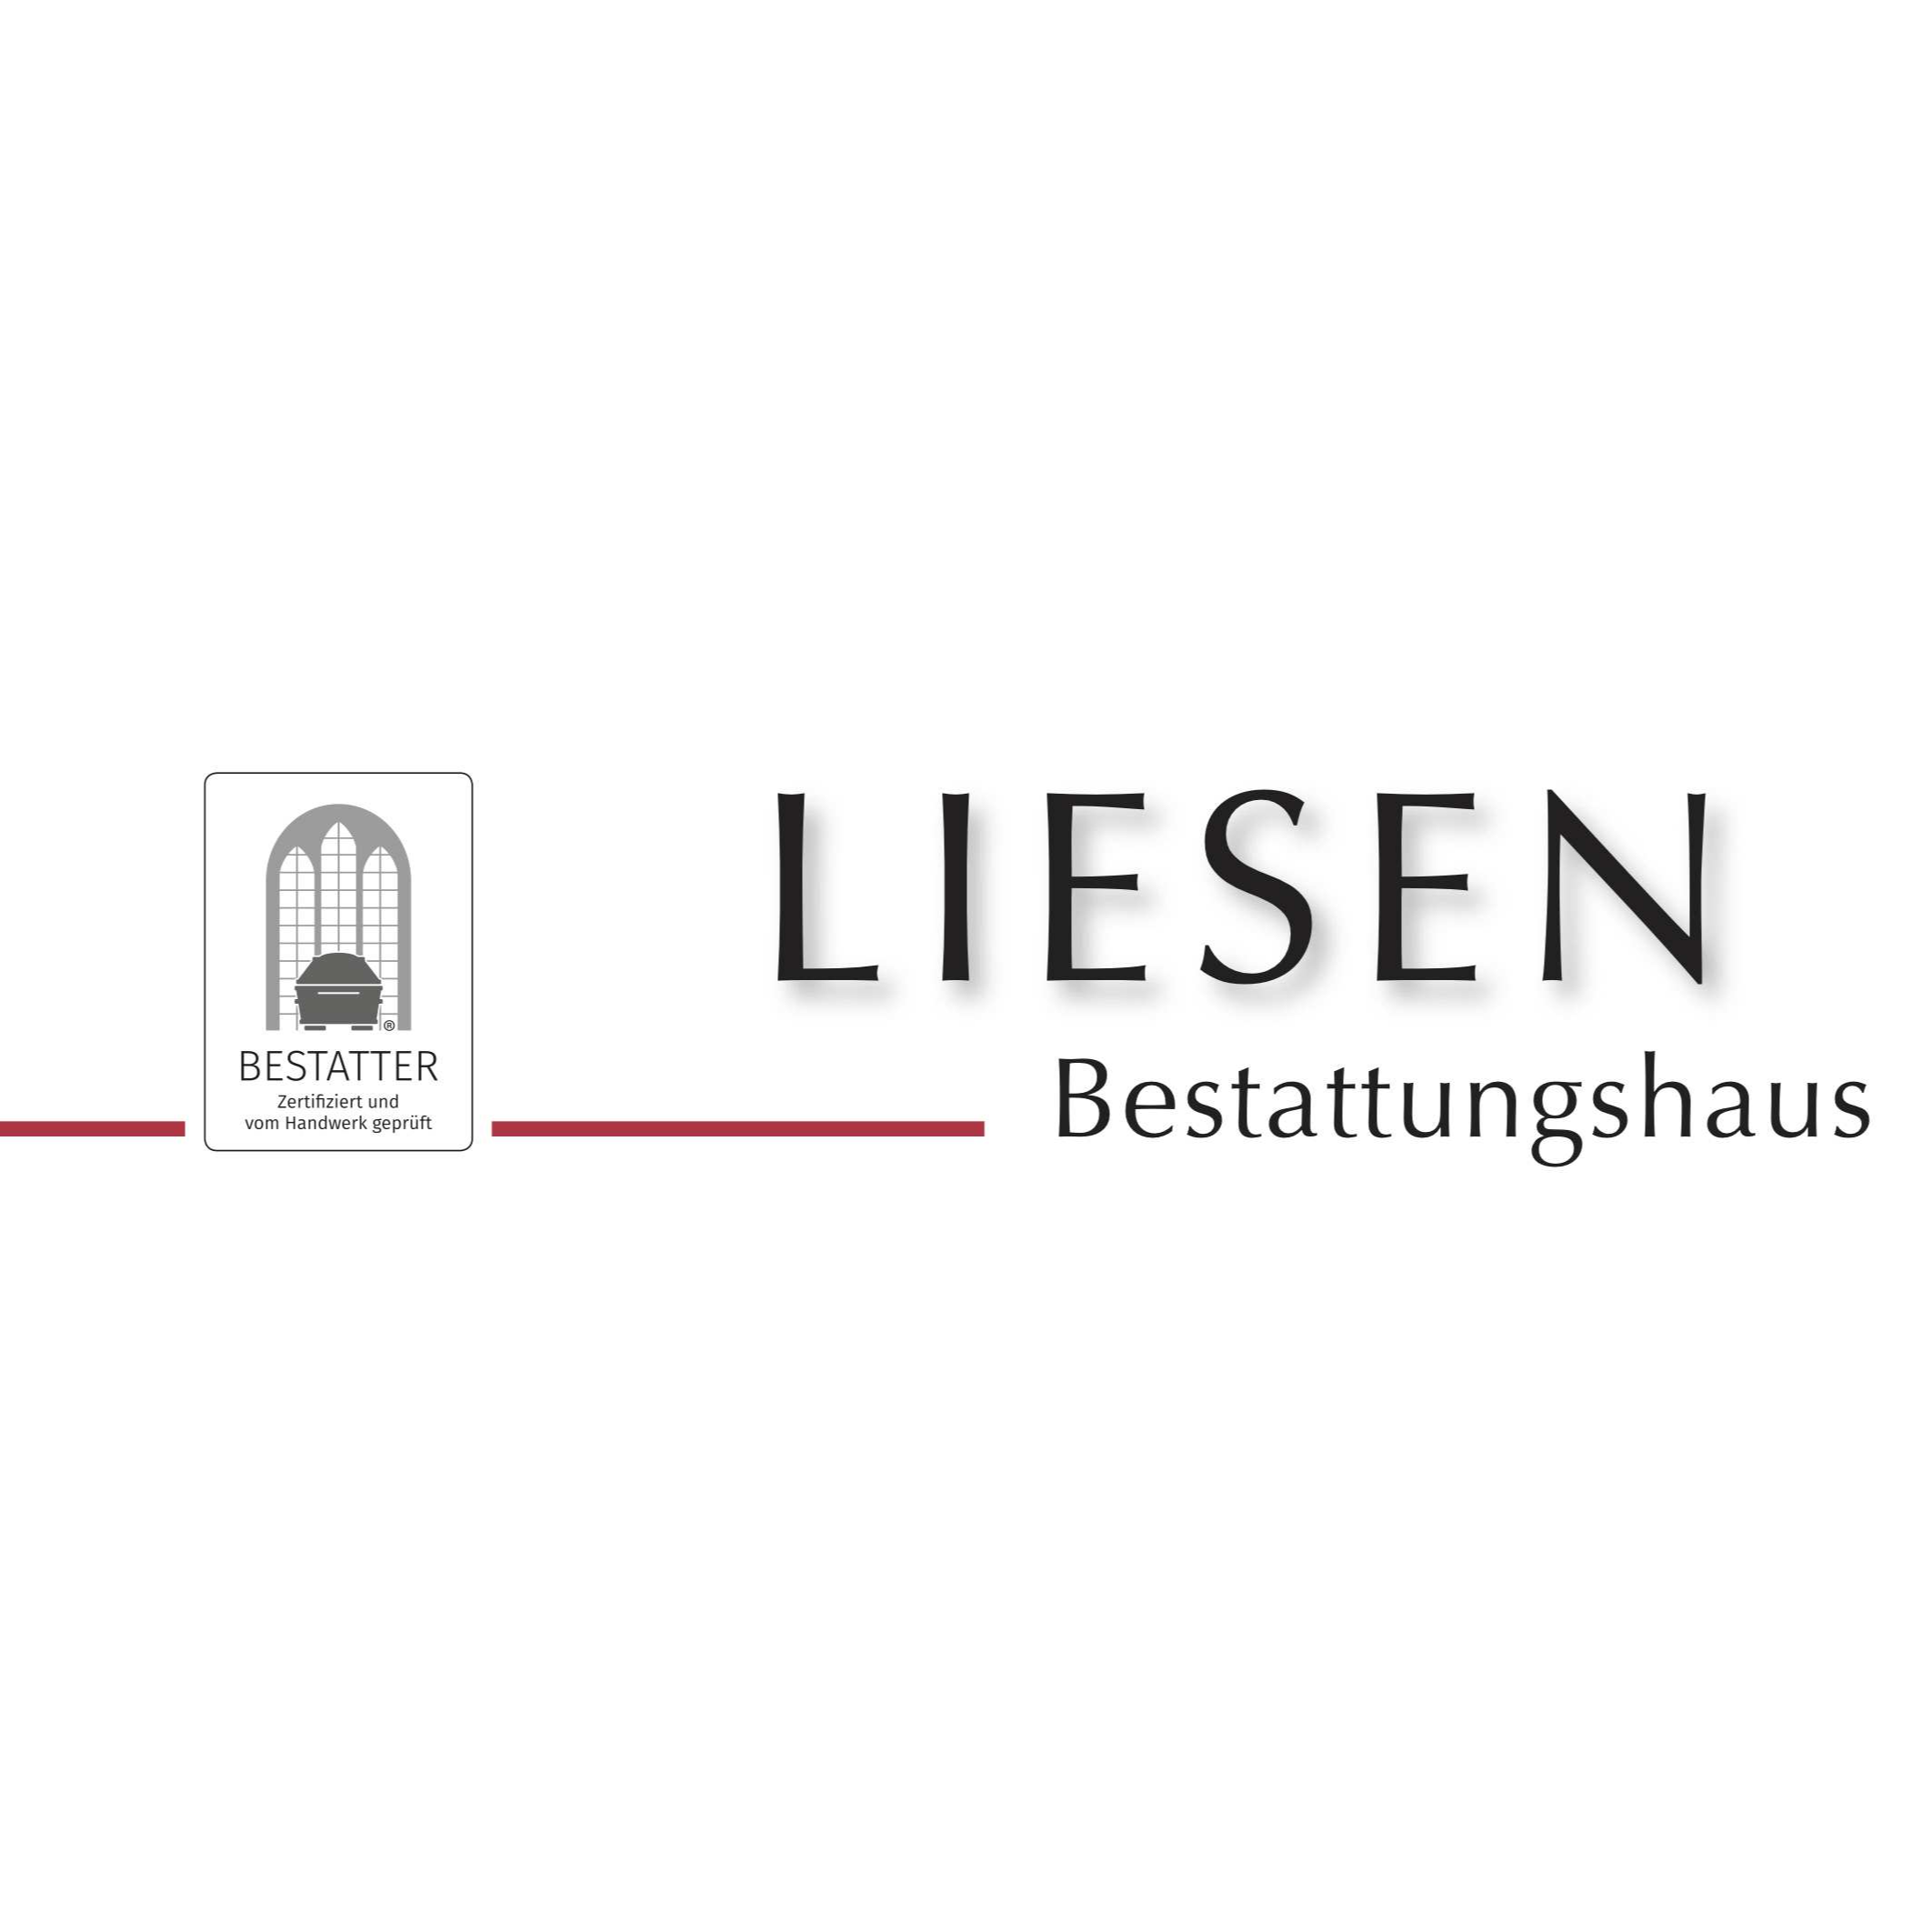 Liesen GmbH Bestattungshaus - Schreinerei in Duisburg - Logo